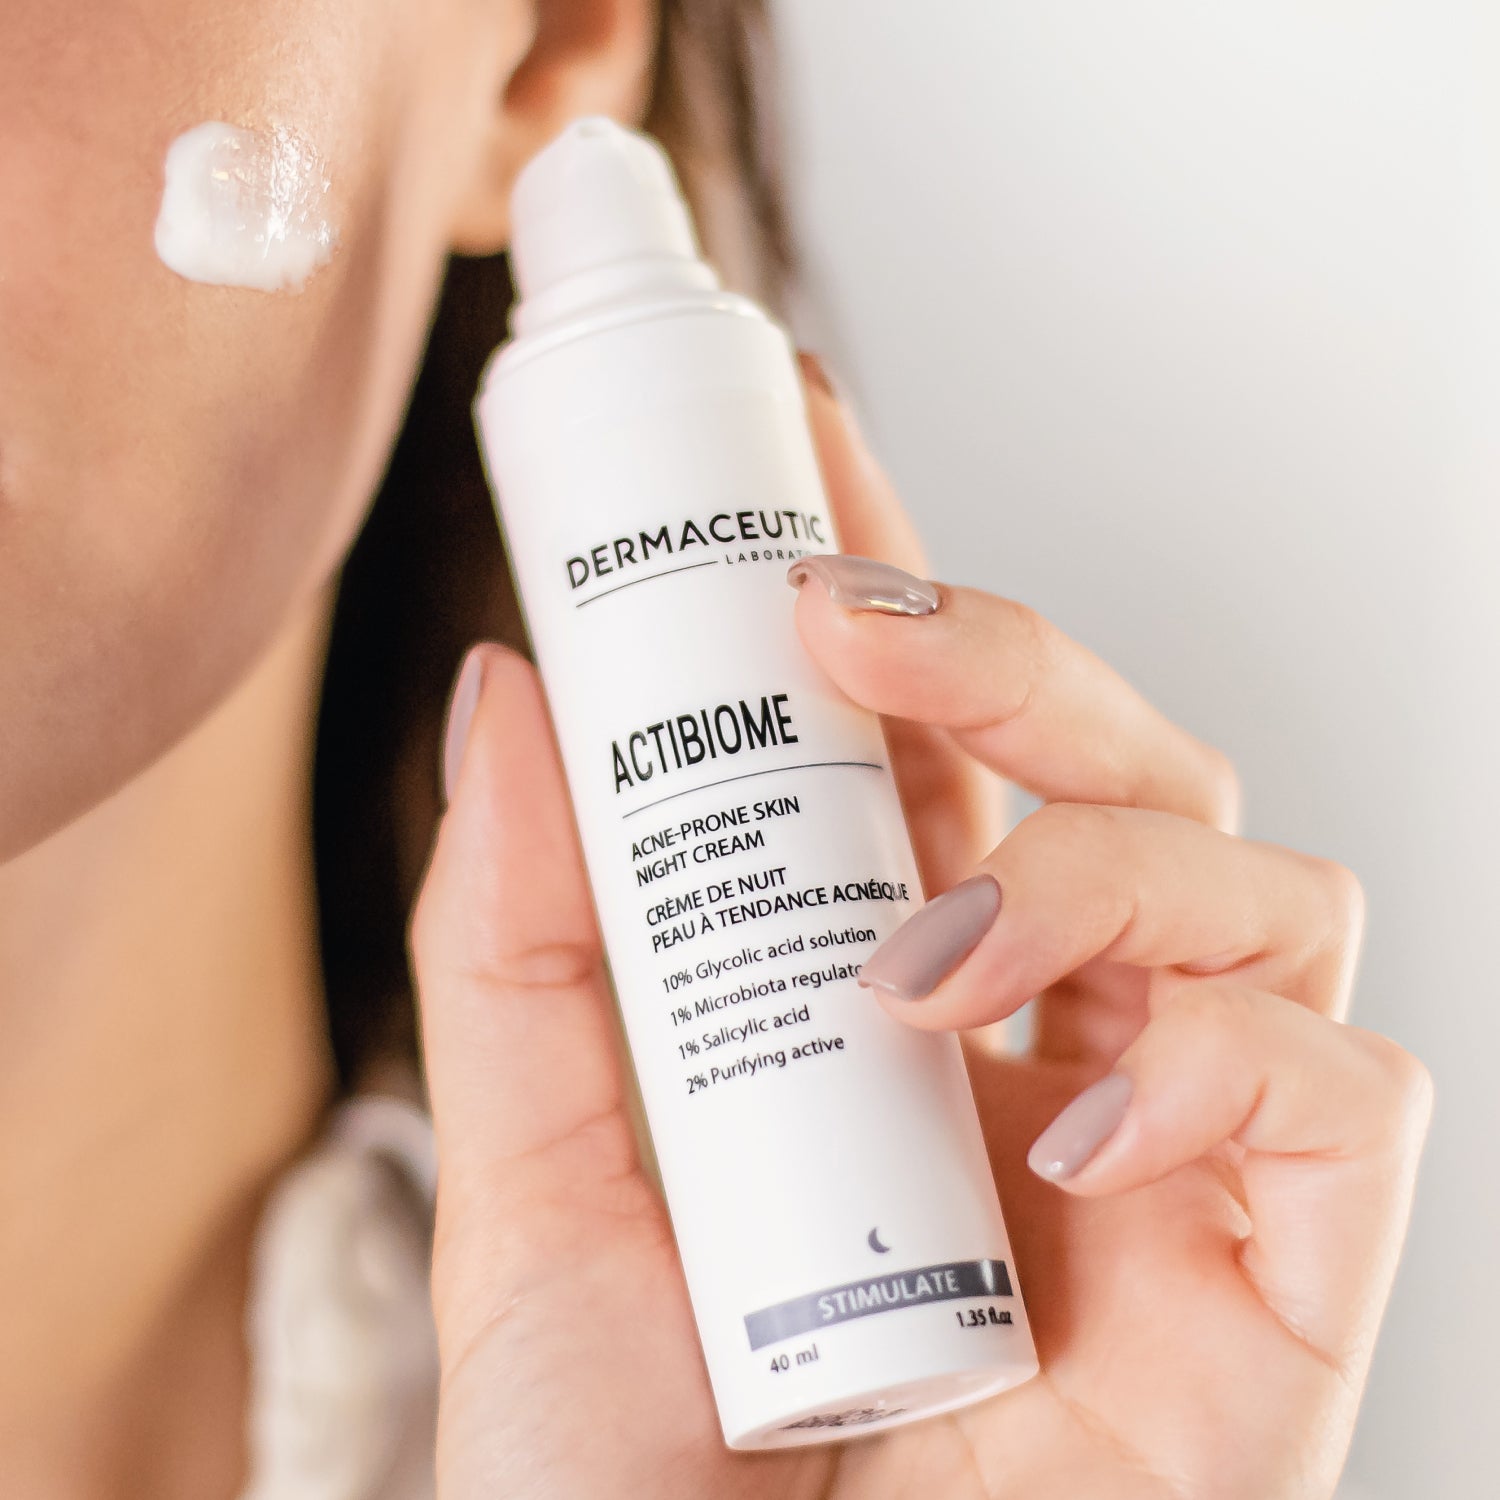 Dermaceutic Actibiome 40 ml - Fast Acting Acne Prone Night Cream